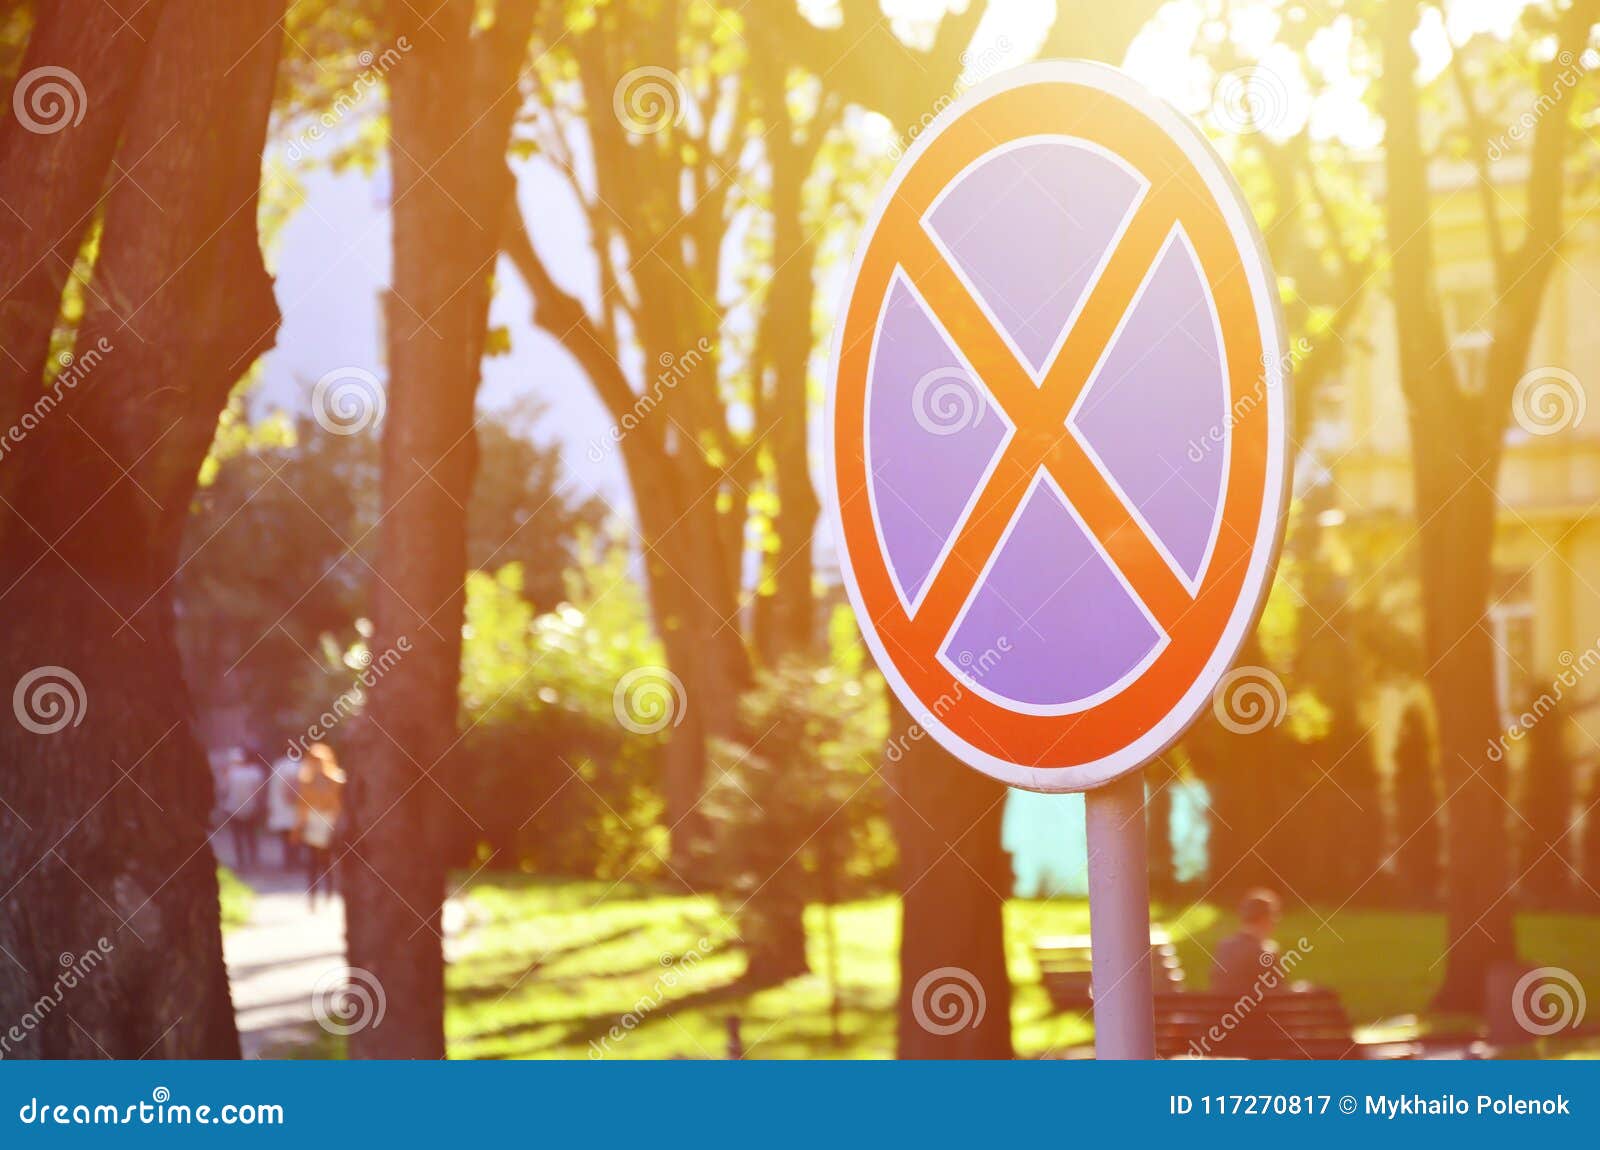 Round Road Sign: Biển báo hình tròn là một trong những biểu tượng truyền tải thông điệp rõ ràng và súc tích trong lưu thông giao thông. Hình ảnh liên quan sẽ mang đến cho bạn sự lựa chọn phù hợp cho các mô hình dự án về đường bộ.